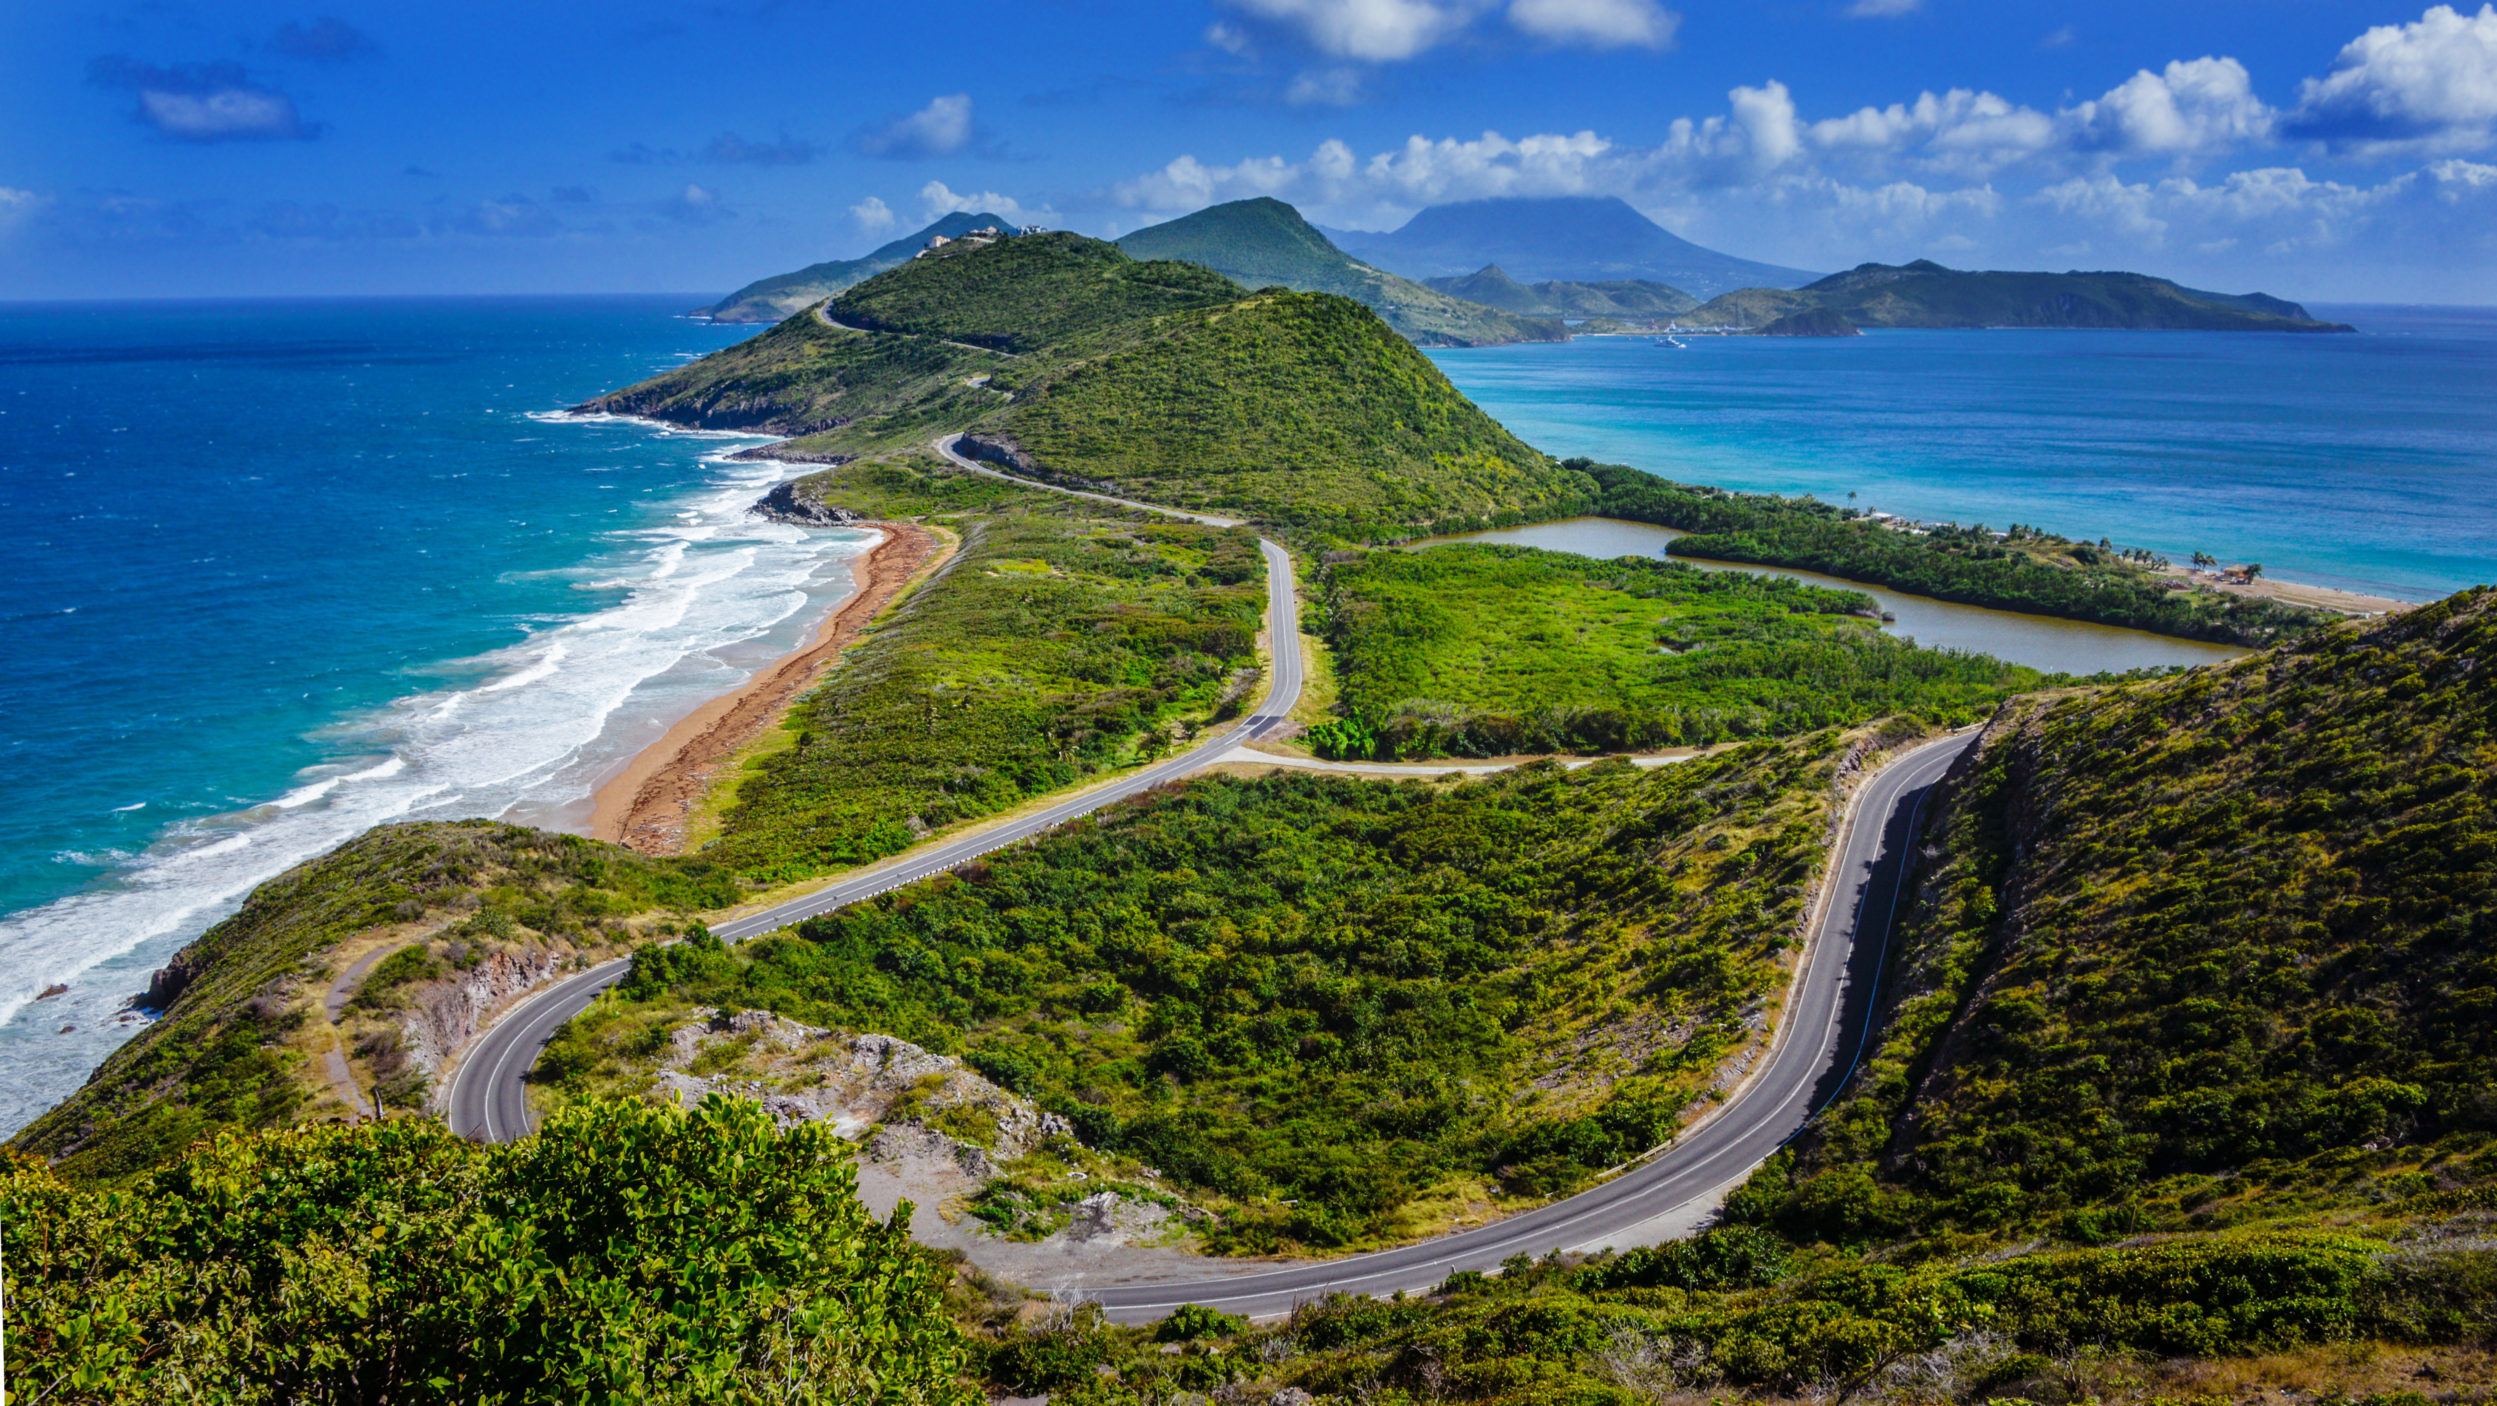 St. Kitts [Shutterstock]